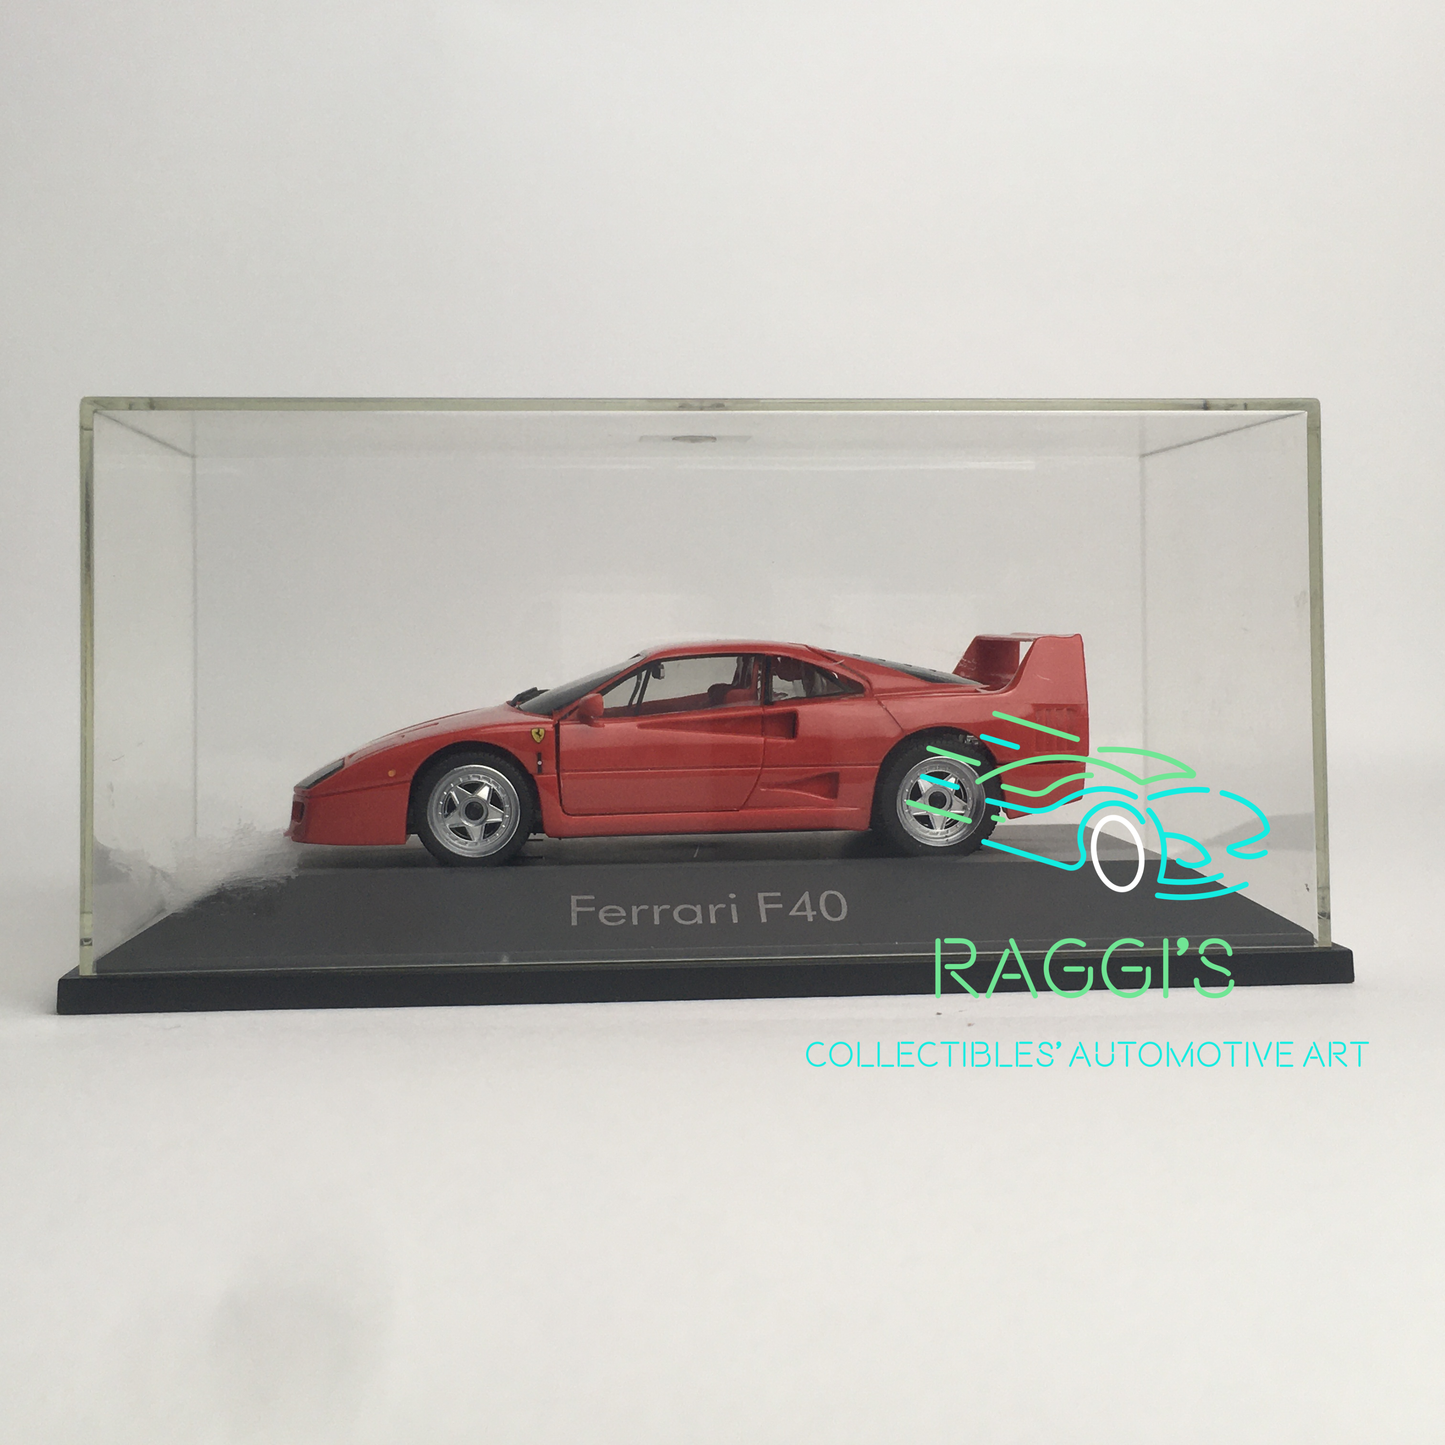 Ferrari, Modellino in Plastica Herpa in Scala 1:43 Ferrari F40 - Raggi's Collectibles' Automotive Art